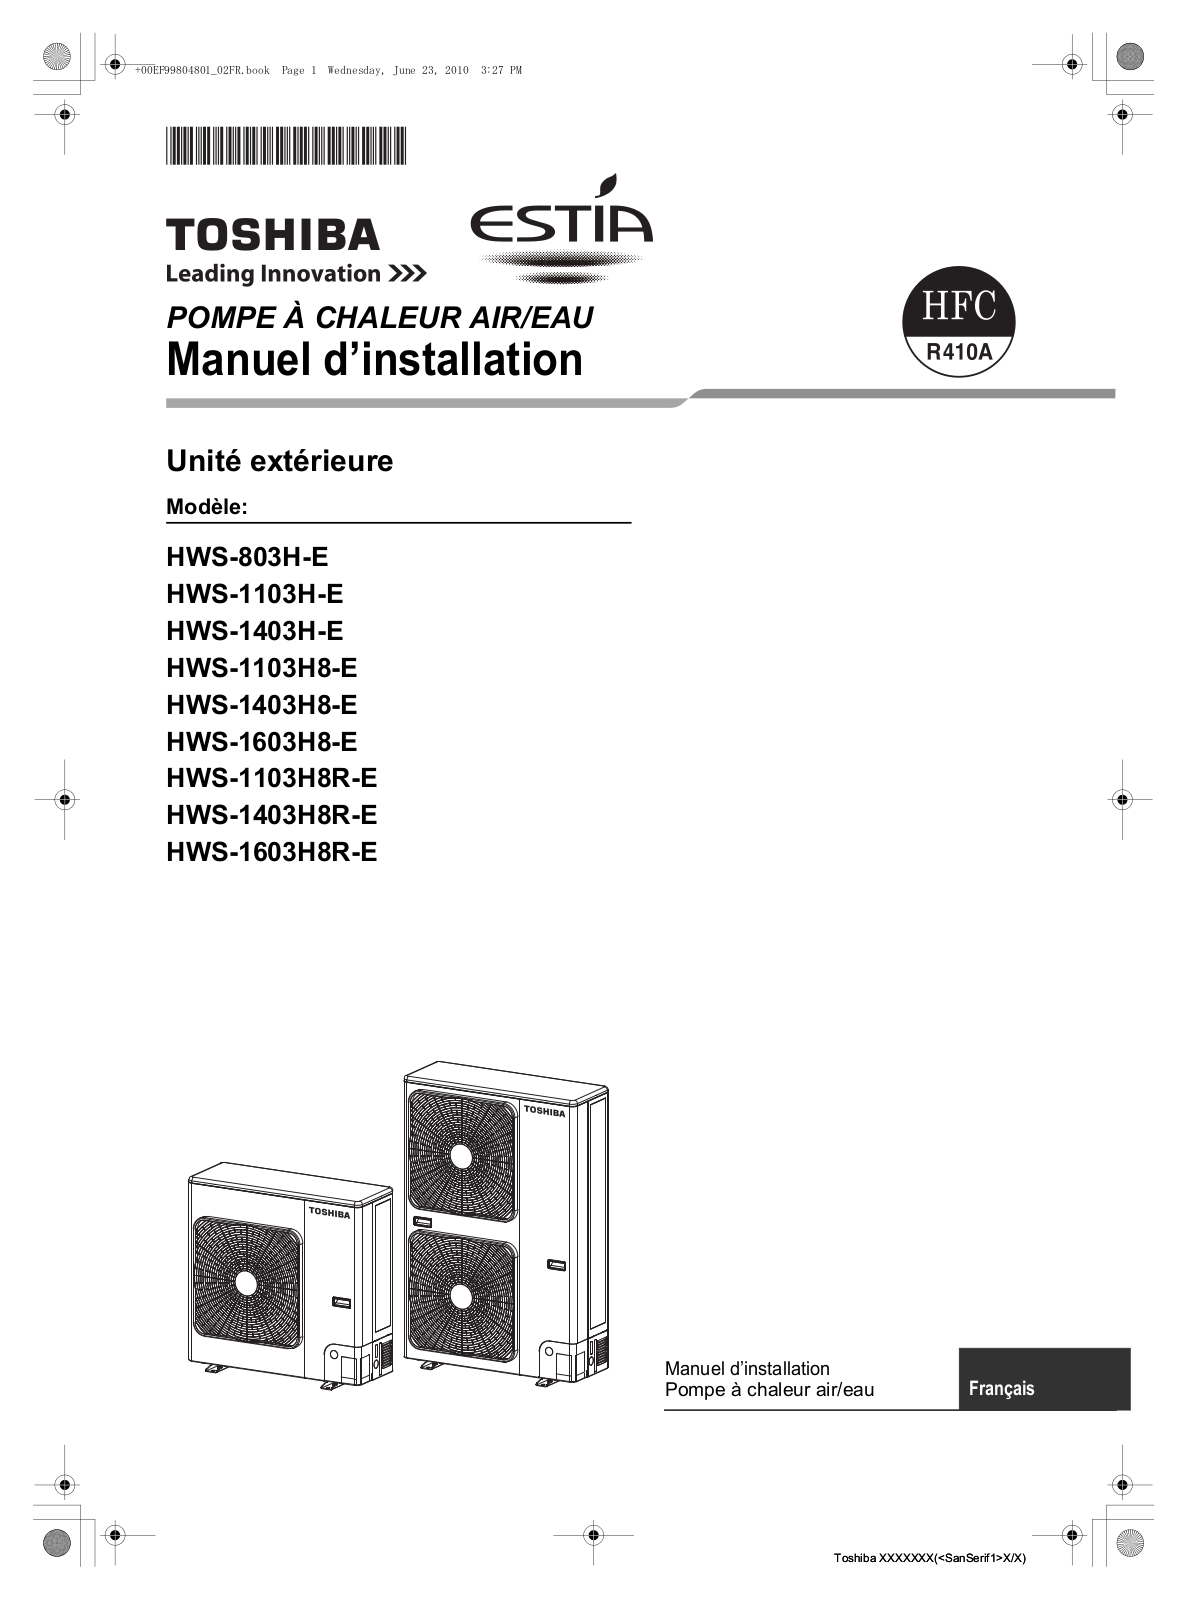 TOSHIBA HWS-1403H8-E User Manual